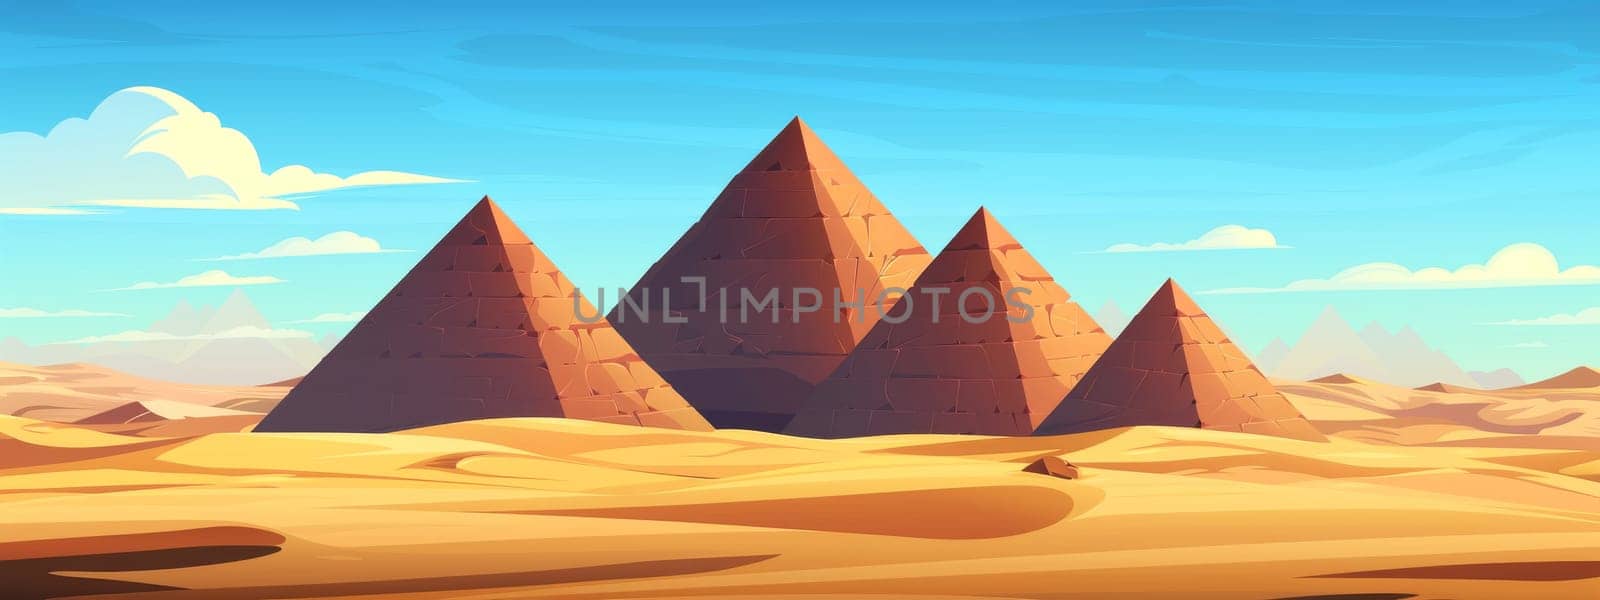 A four pyramids with sand desert